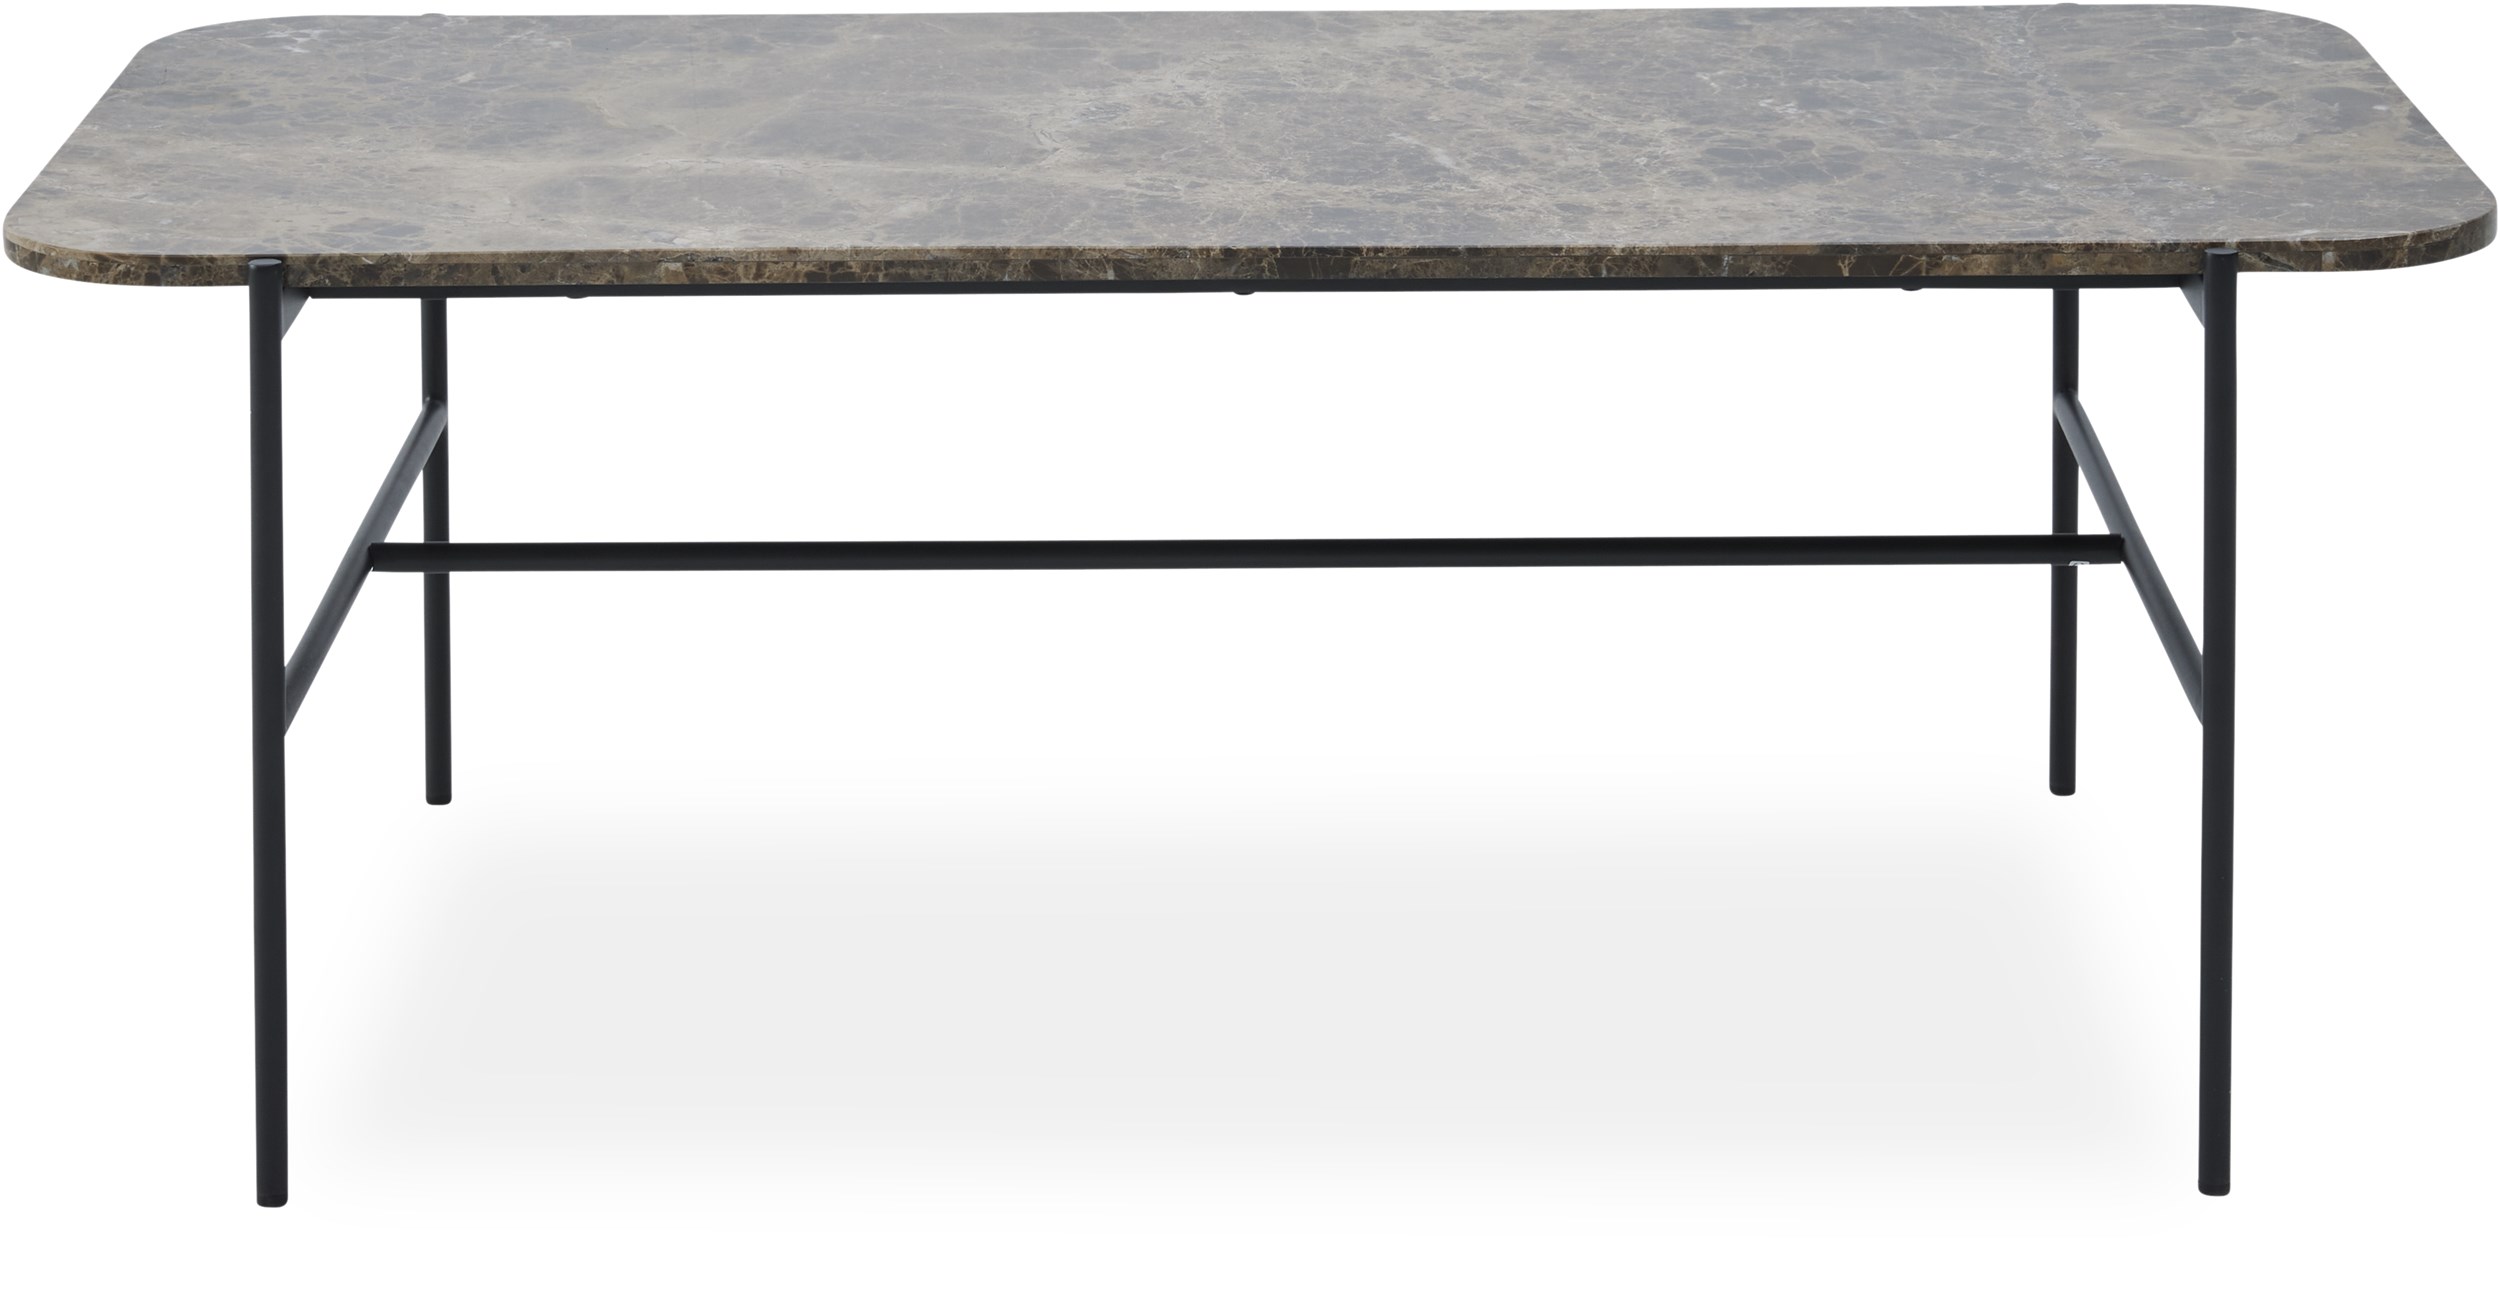 Kora Soffbord 120 x 45 x 60 cm - Ovansida i brun marmor på plywood och stomme i svart pulverlackerad metall